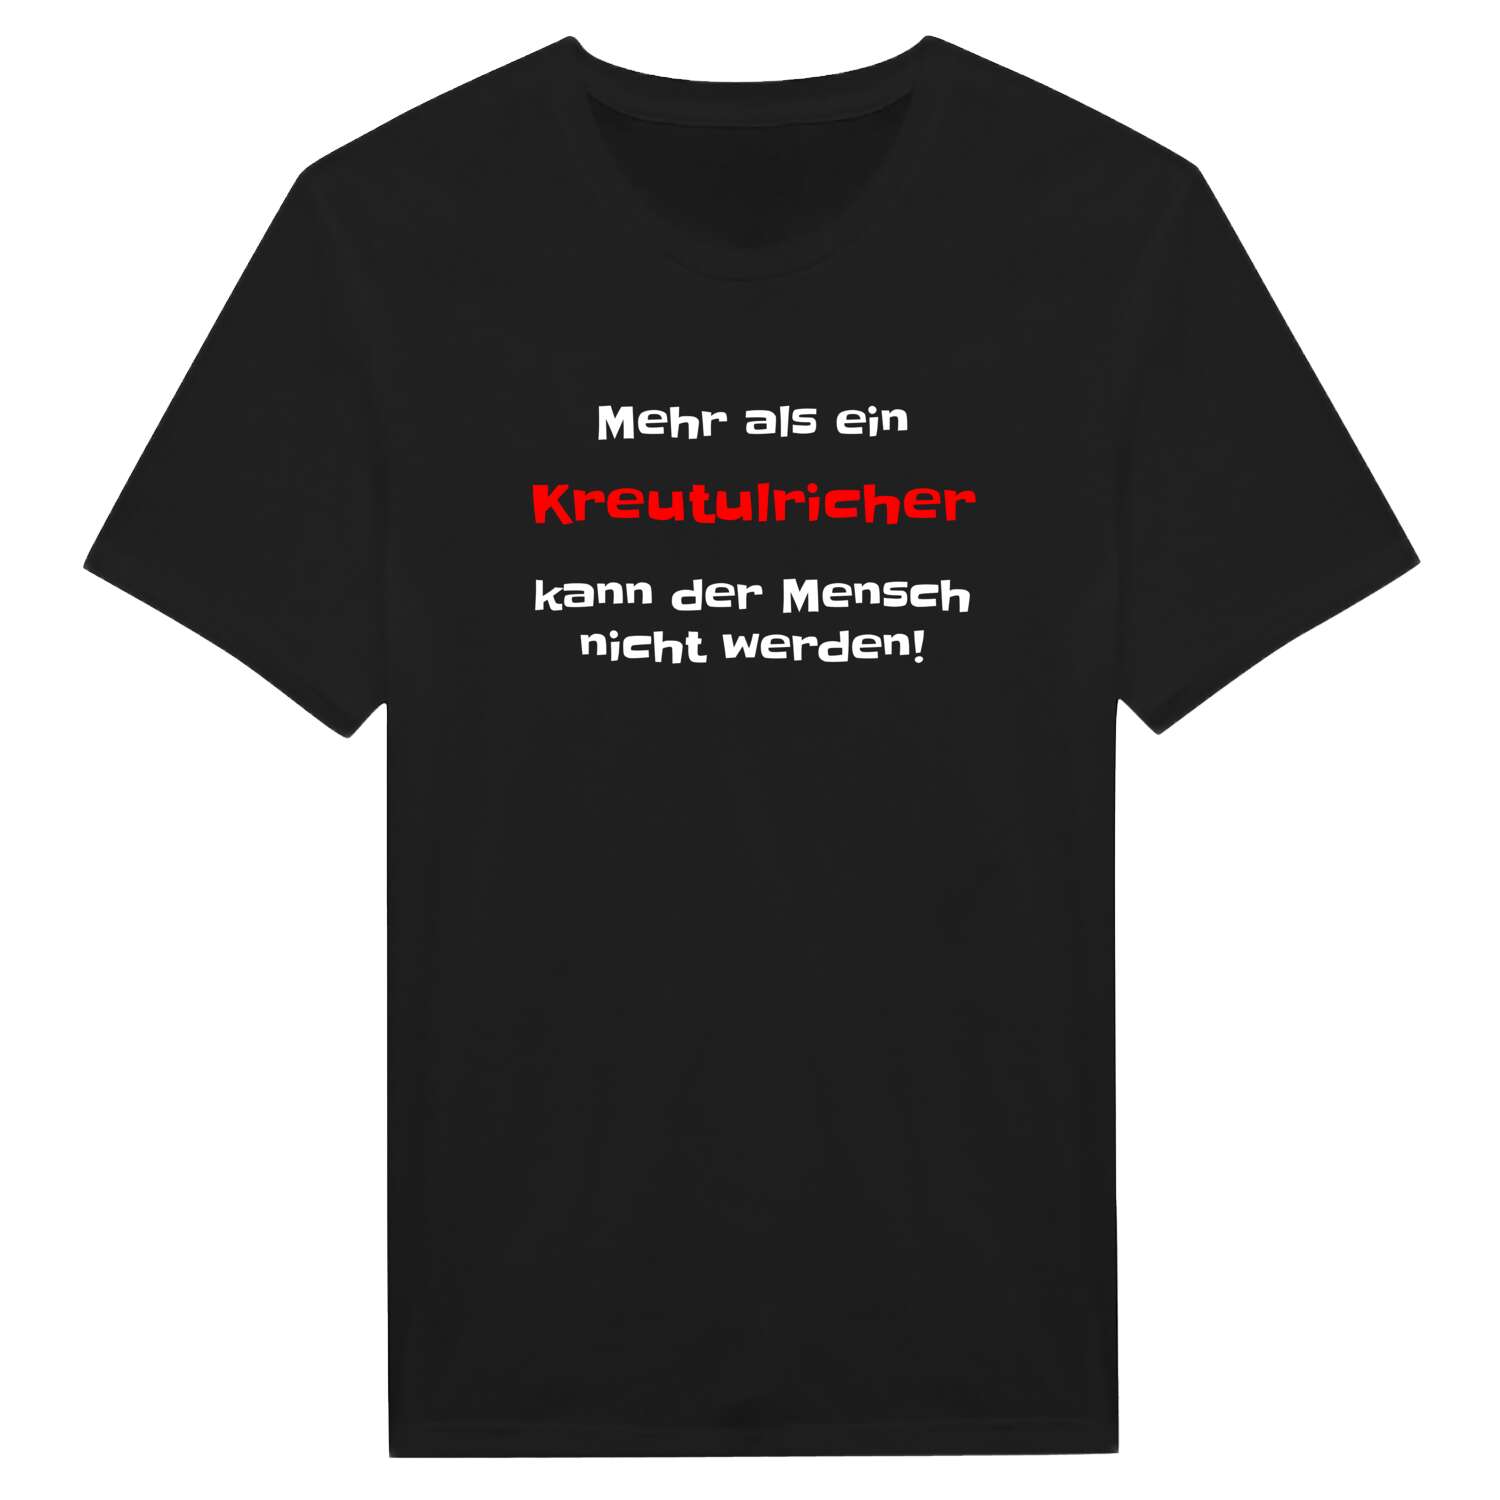 Kreutulrich T-Shirt »Mehr als ein«